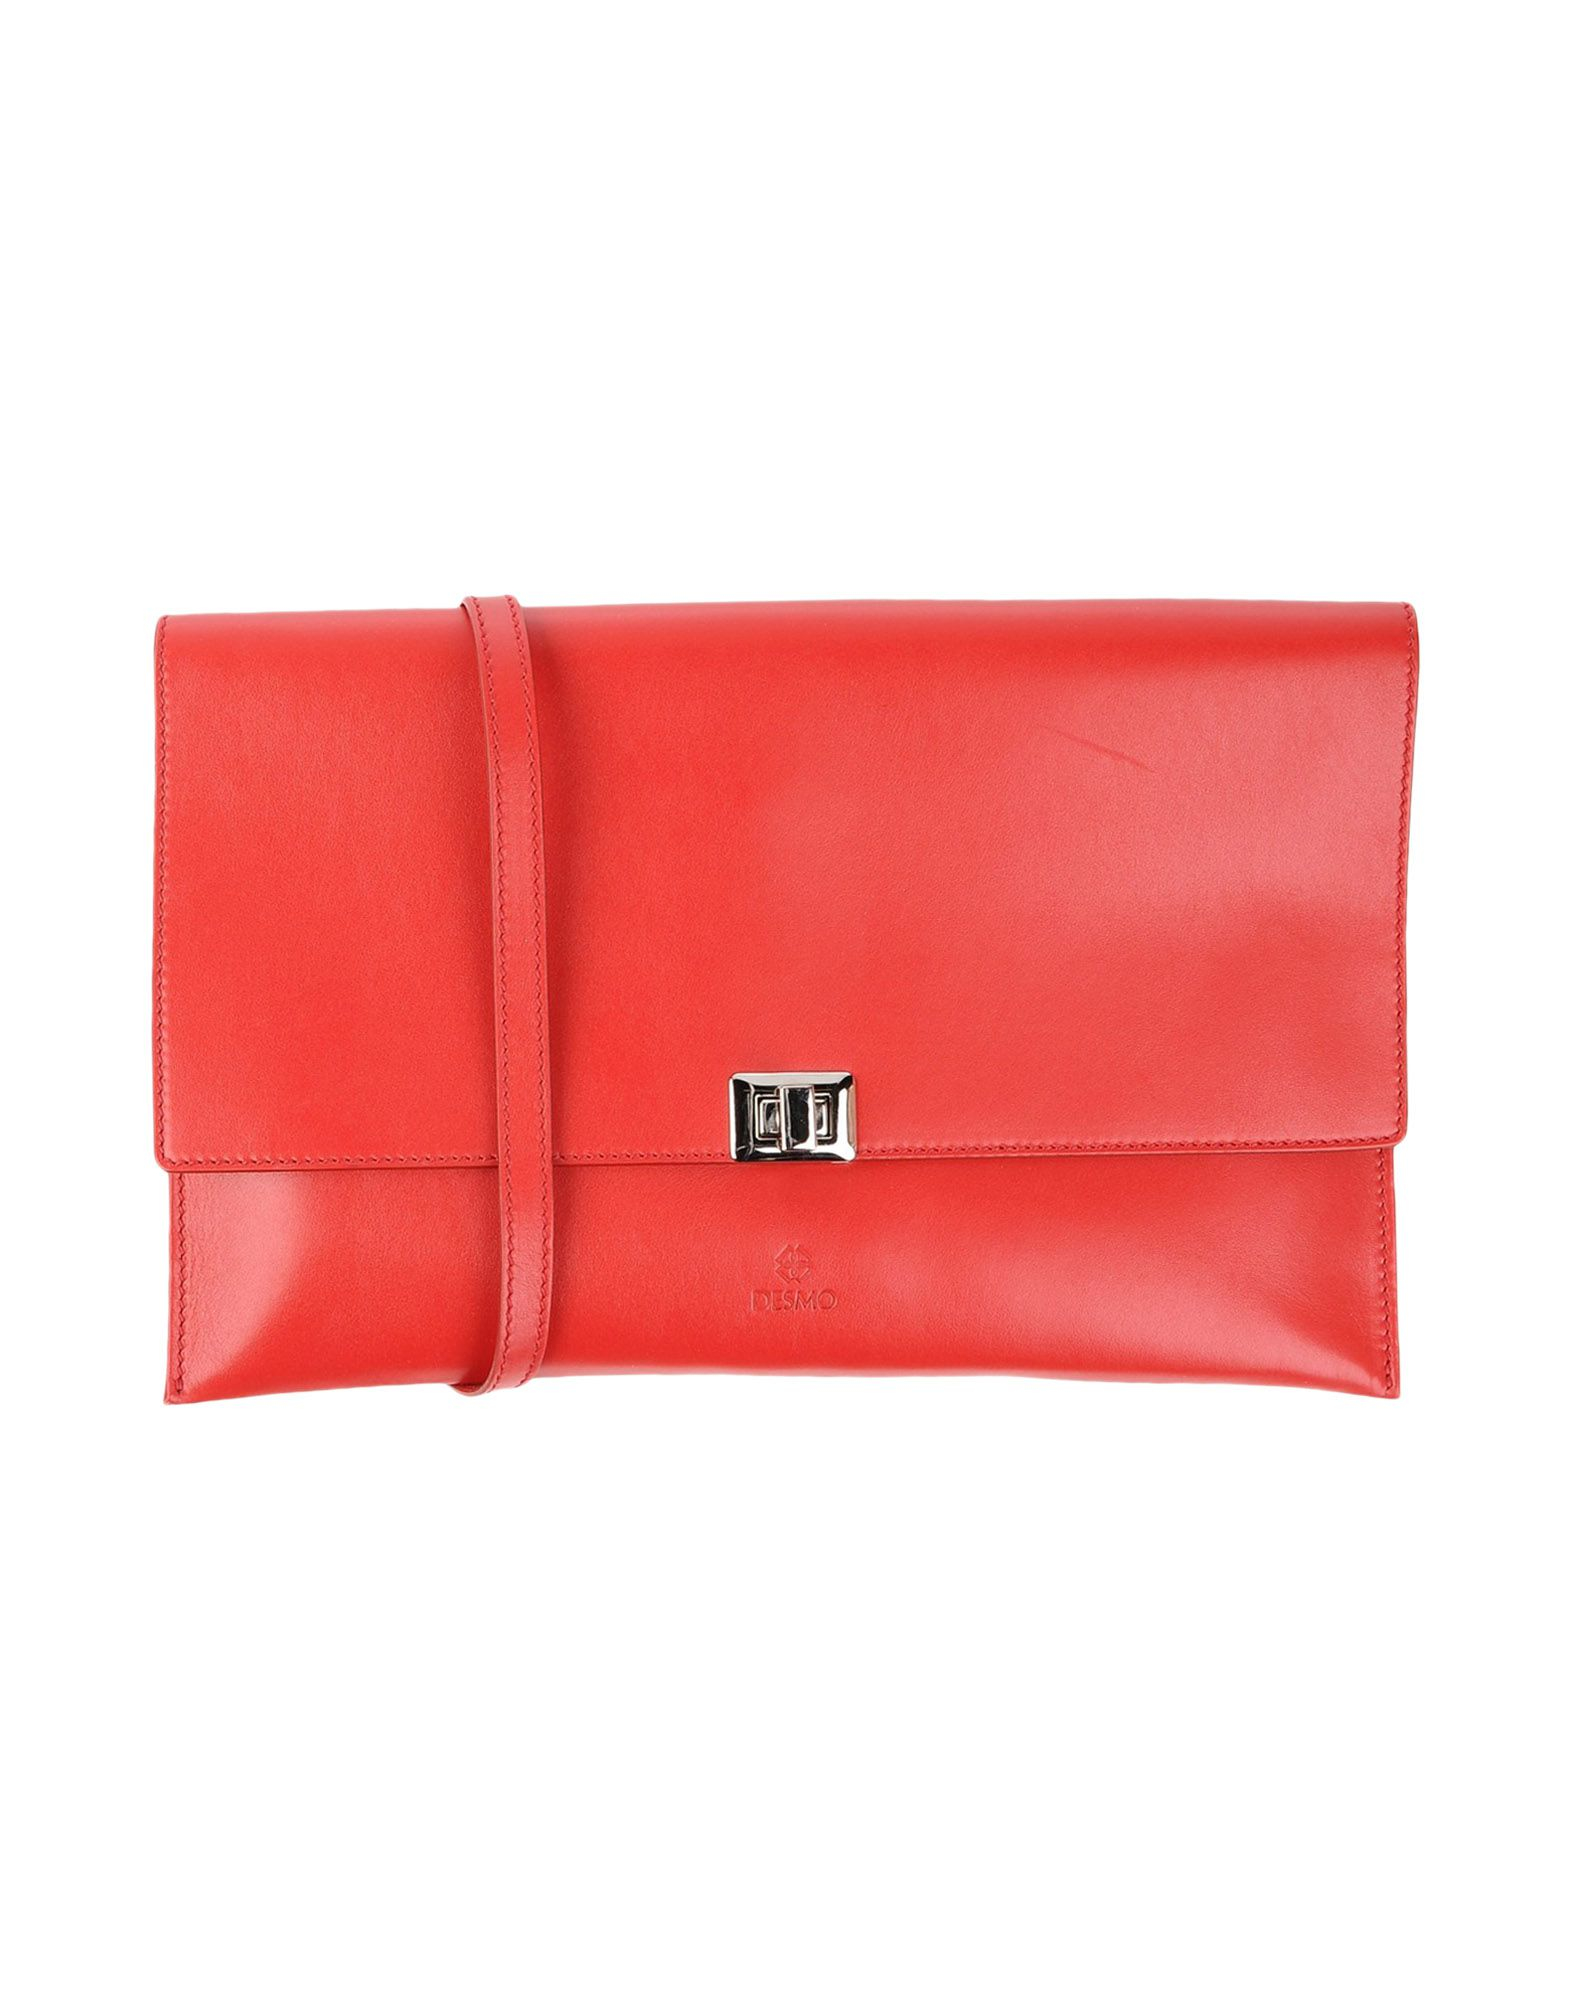 Desmo Handbag in Red - Save 72% | Lyst